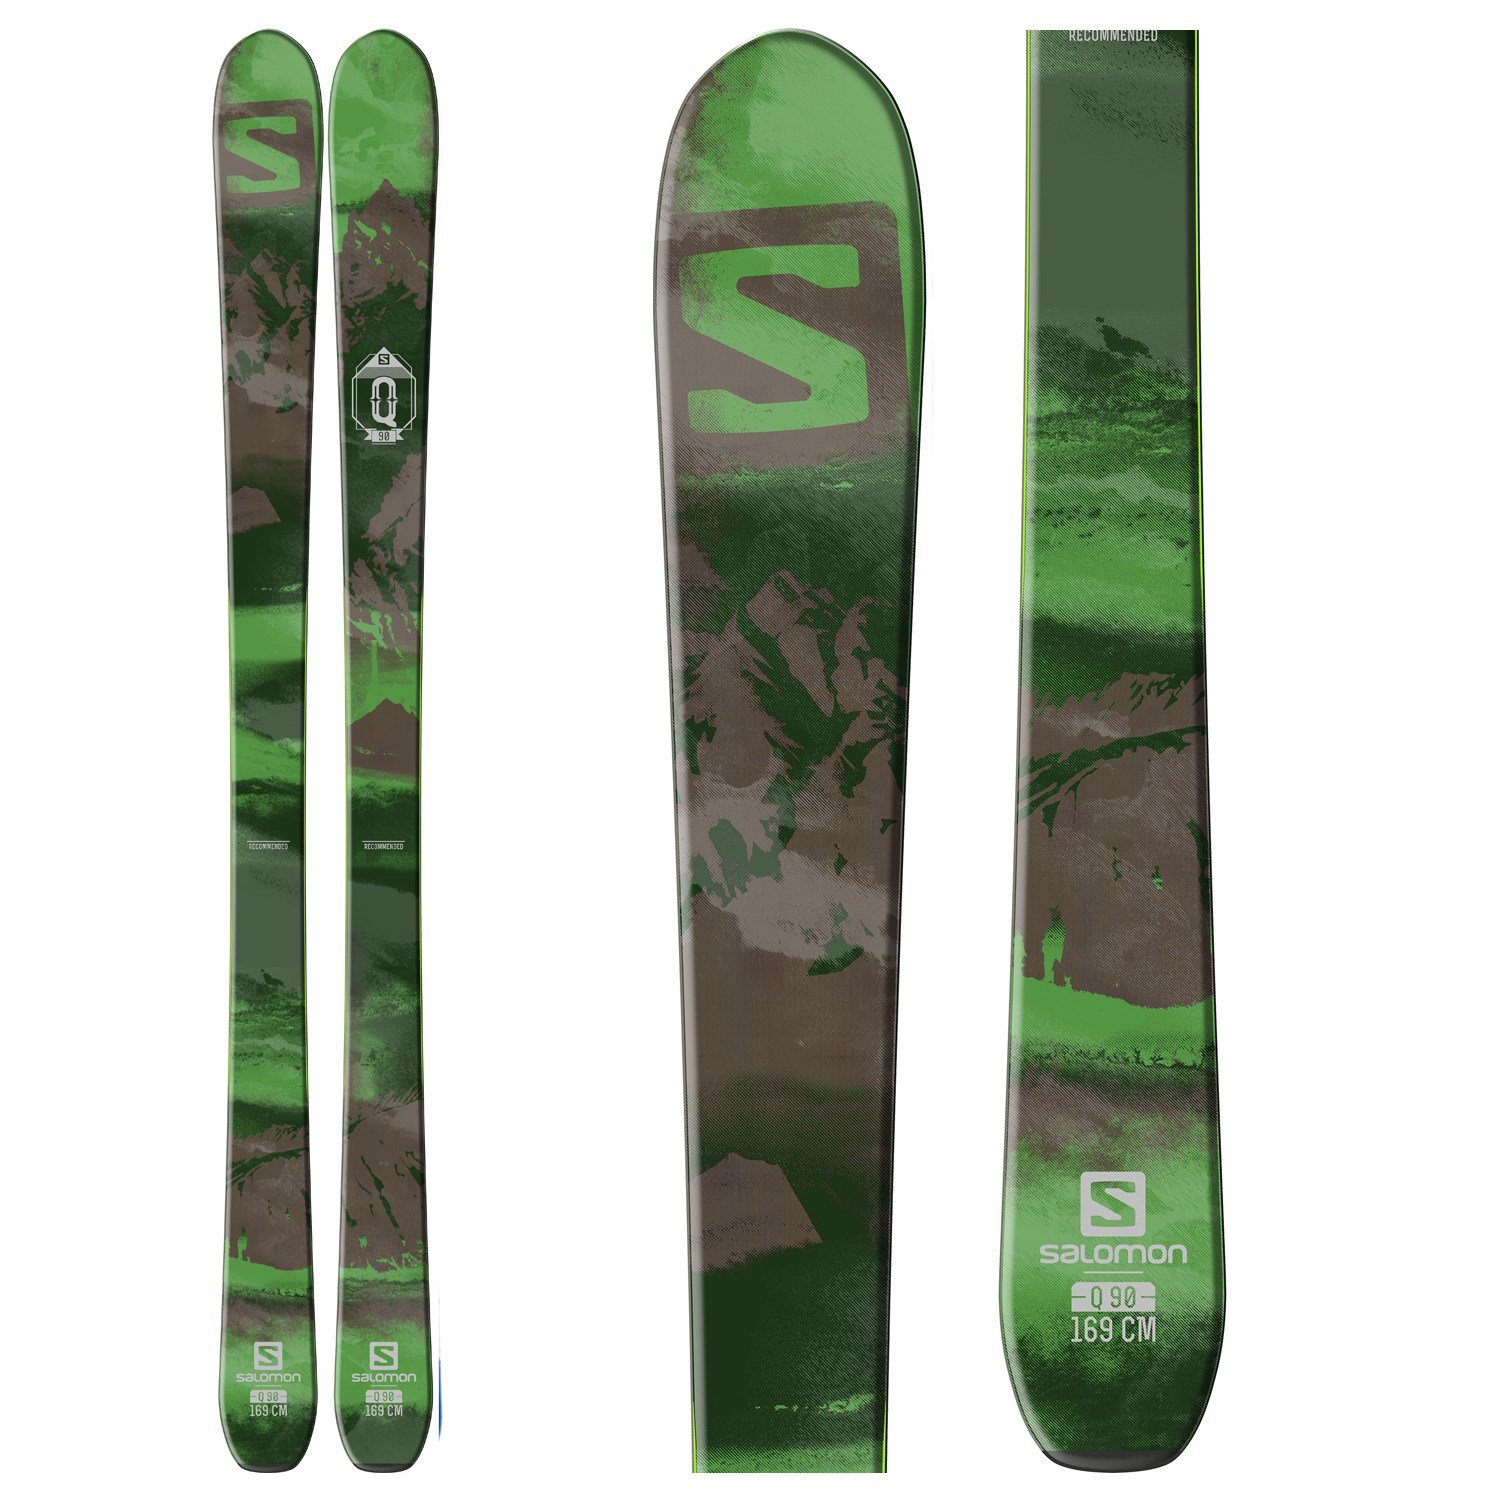 Post beha Zenuw Salomon Q-90 Skis 2016 | evo